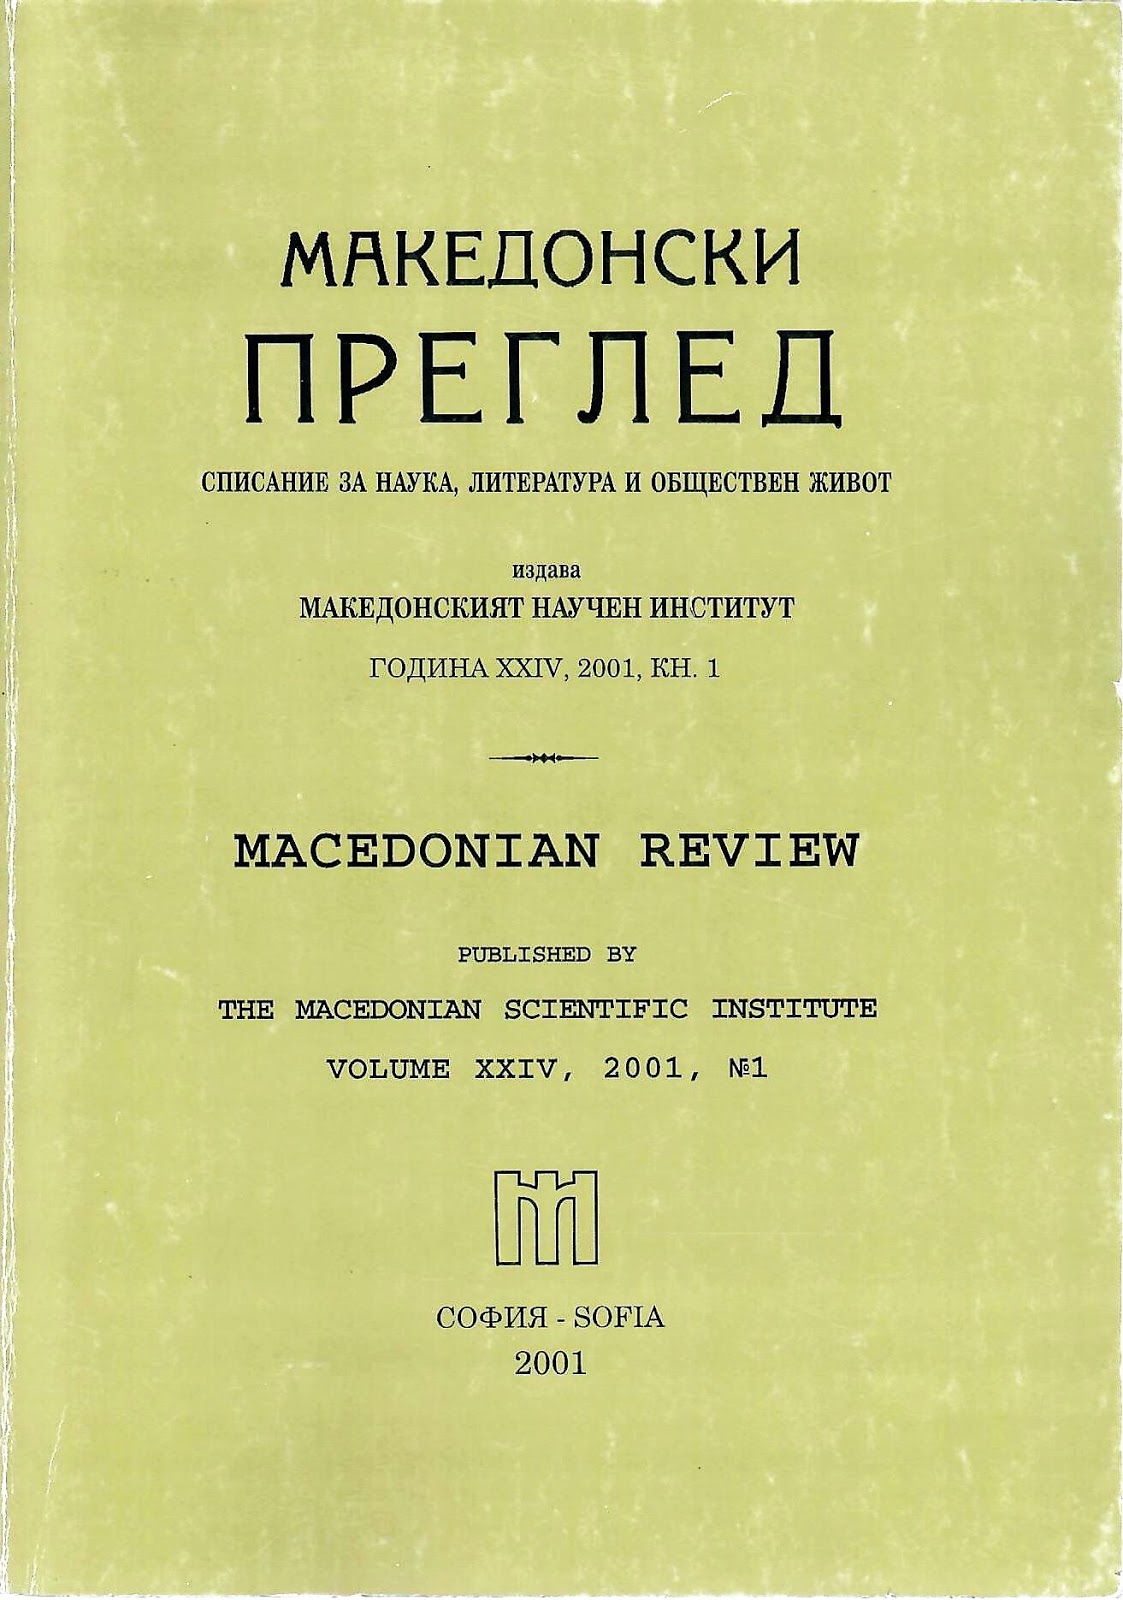 Шаламанов, Бл. Съдържание на „Македонски преглед“ (списание за наука, литература и обществен живот), год. XIV-XXIII (1991-2000)